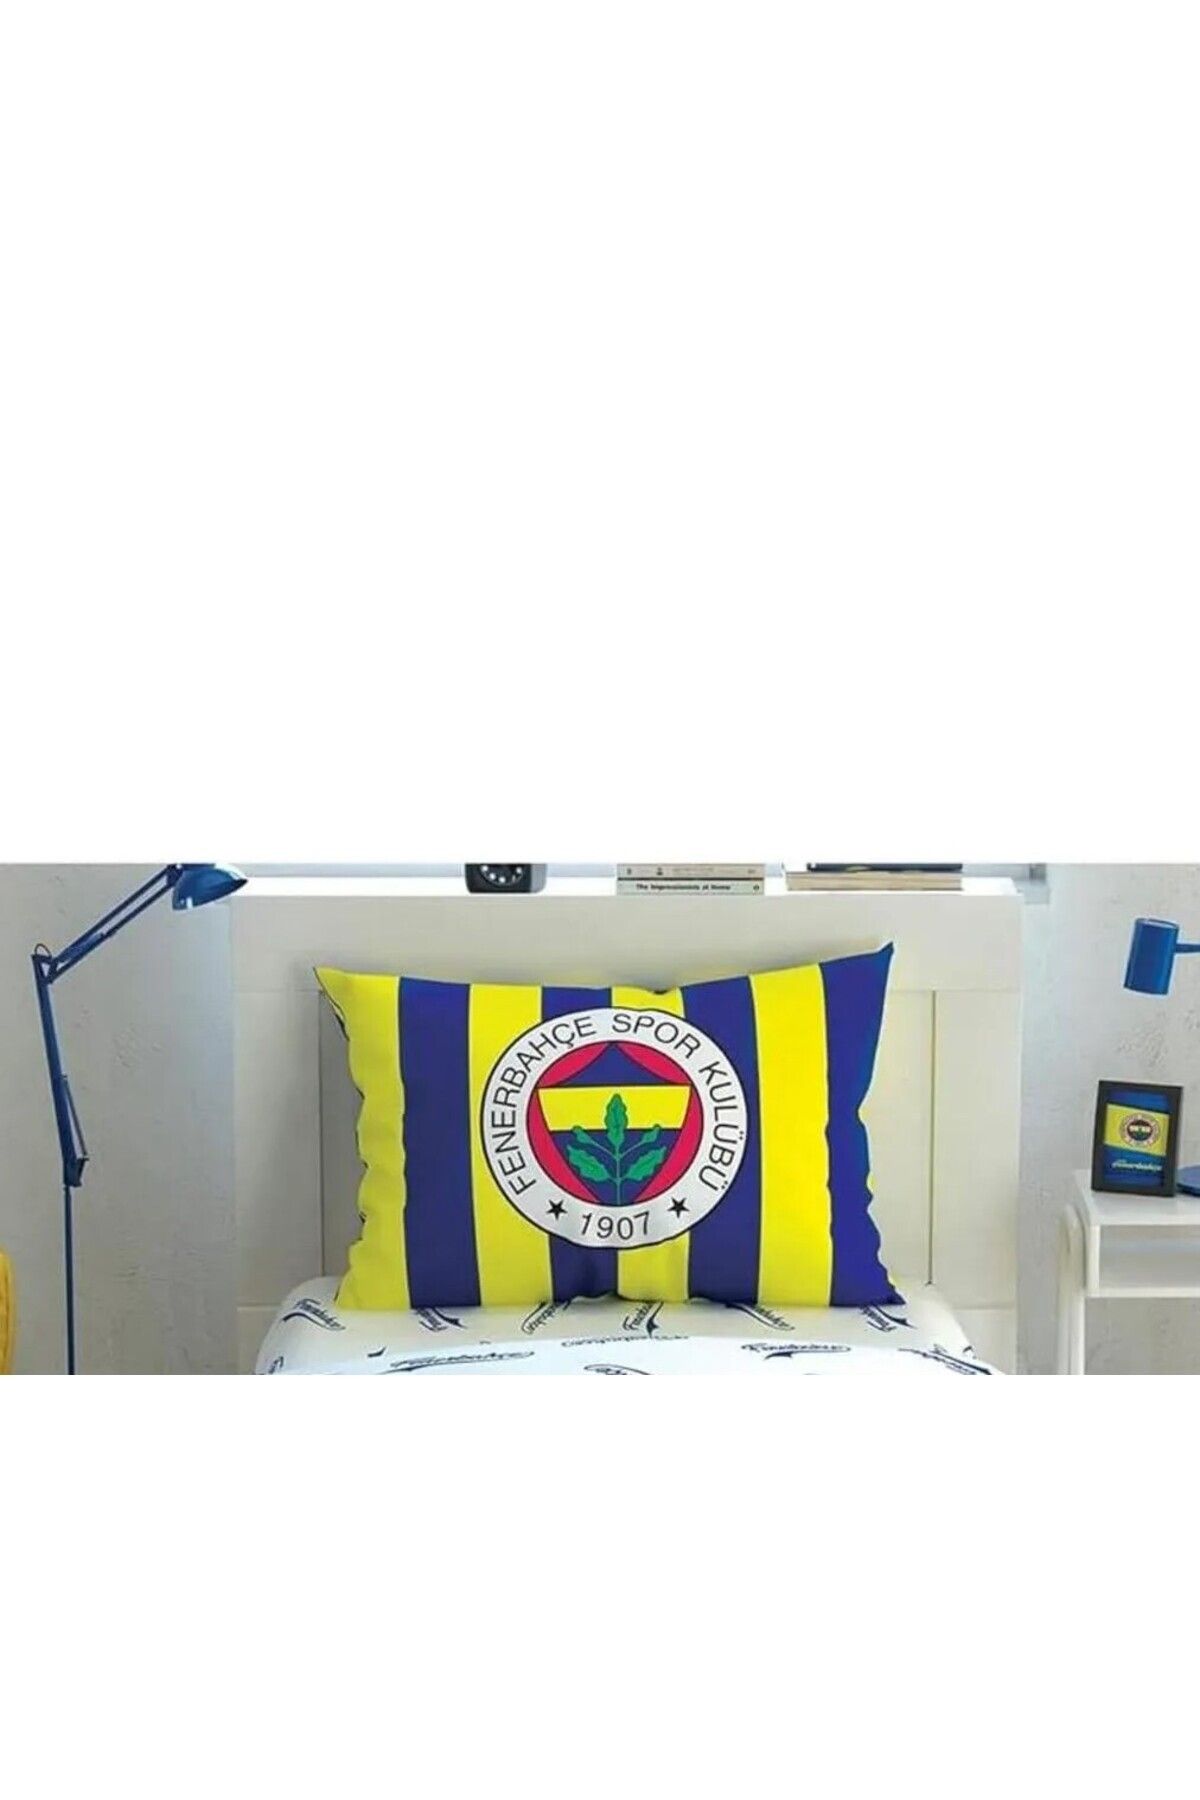 Taç Outlet Fenerbahçe Sarı Lacivert Lastikli Çarşaf Seti Tek Kişilik